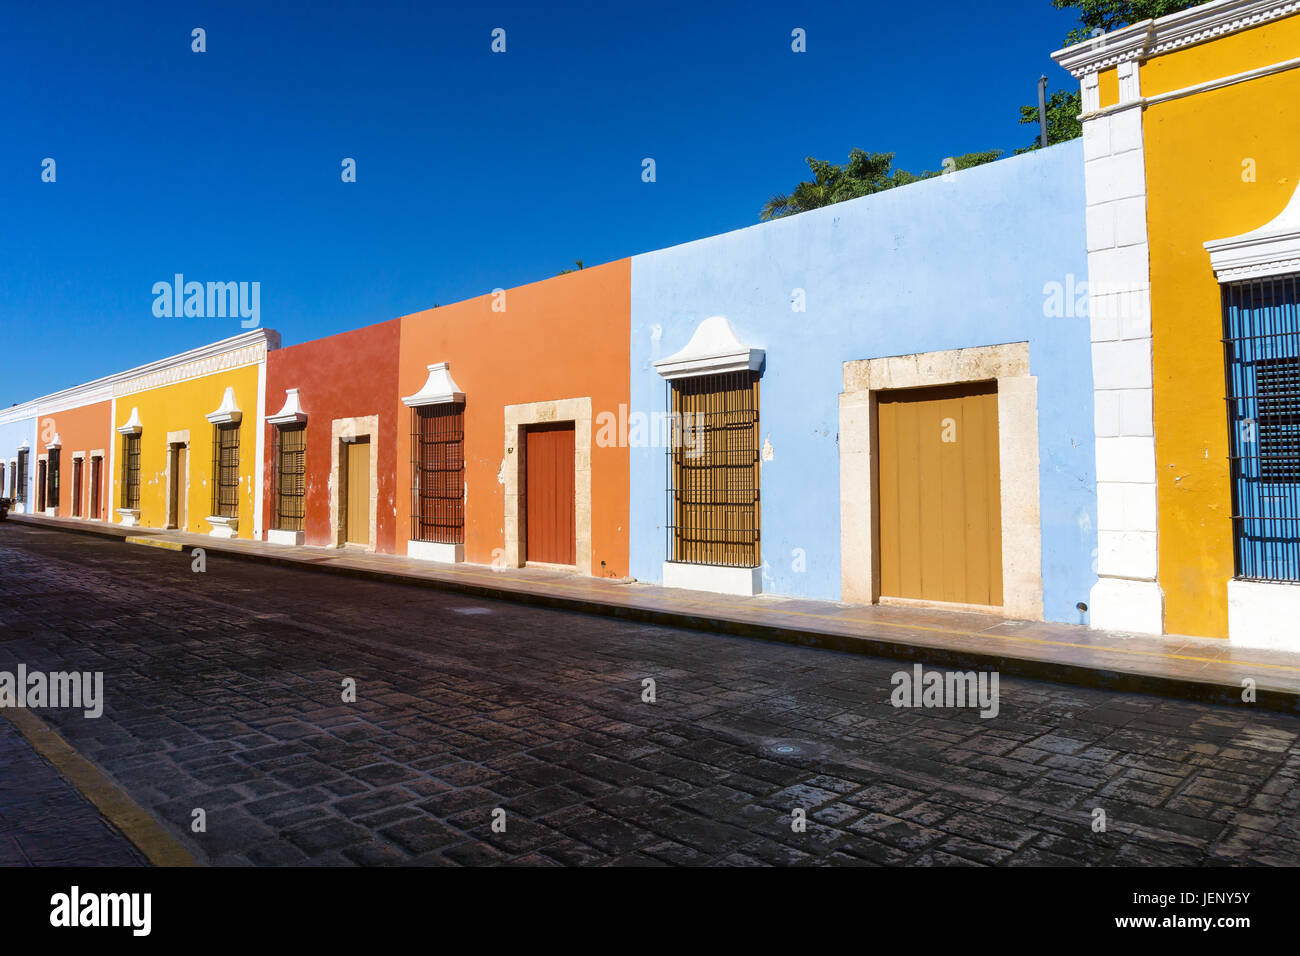 Rangée de bâtiments coloniaux historique dans le centre de Campeche, Mexique Banque D'Images